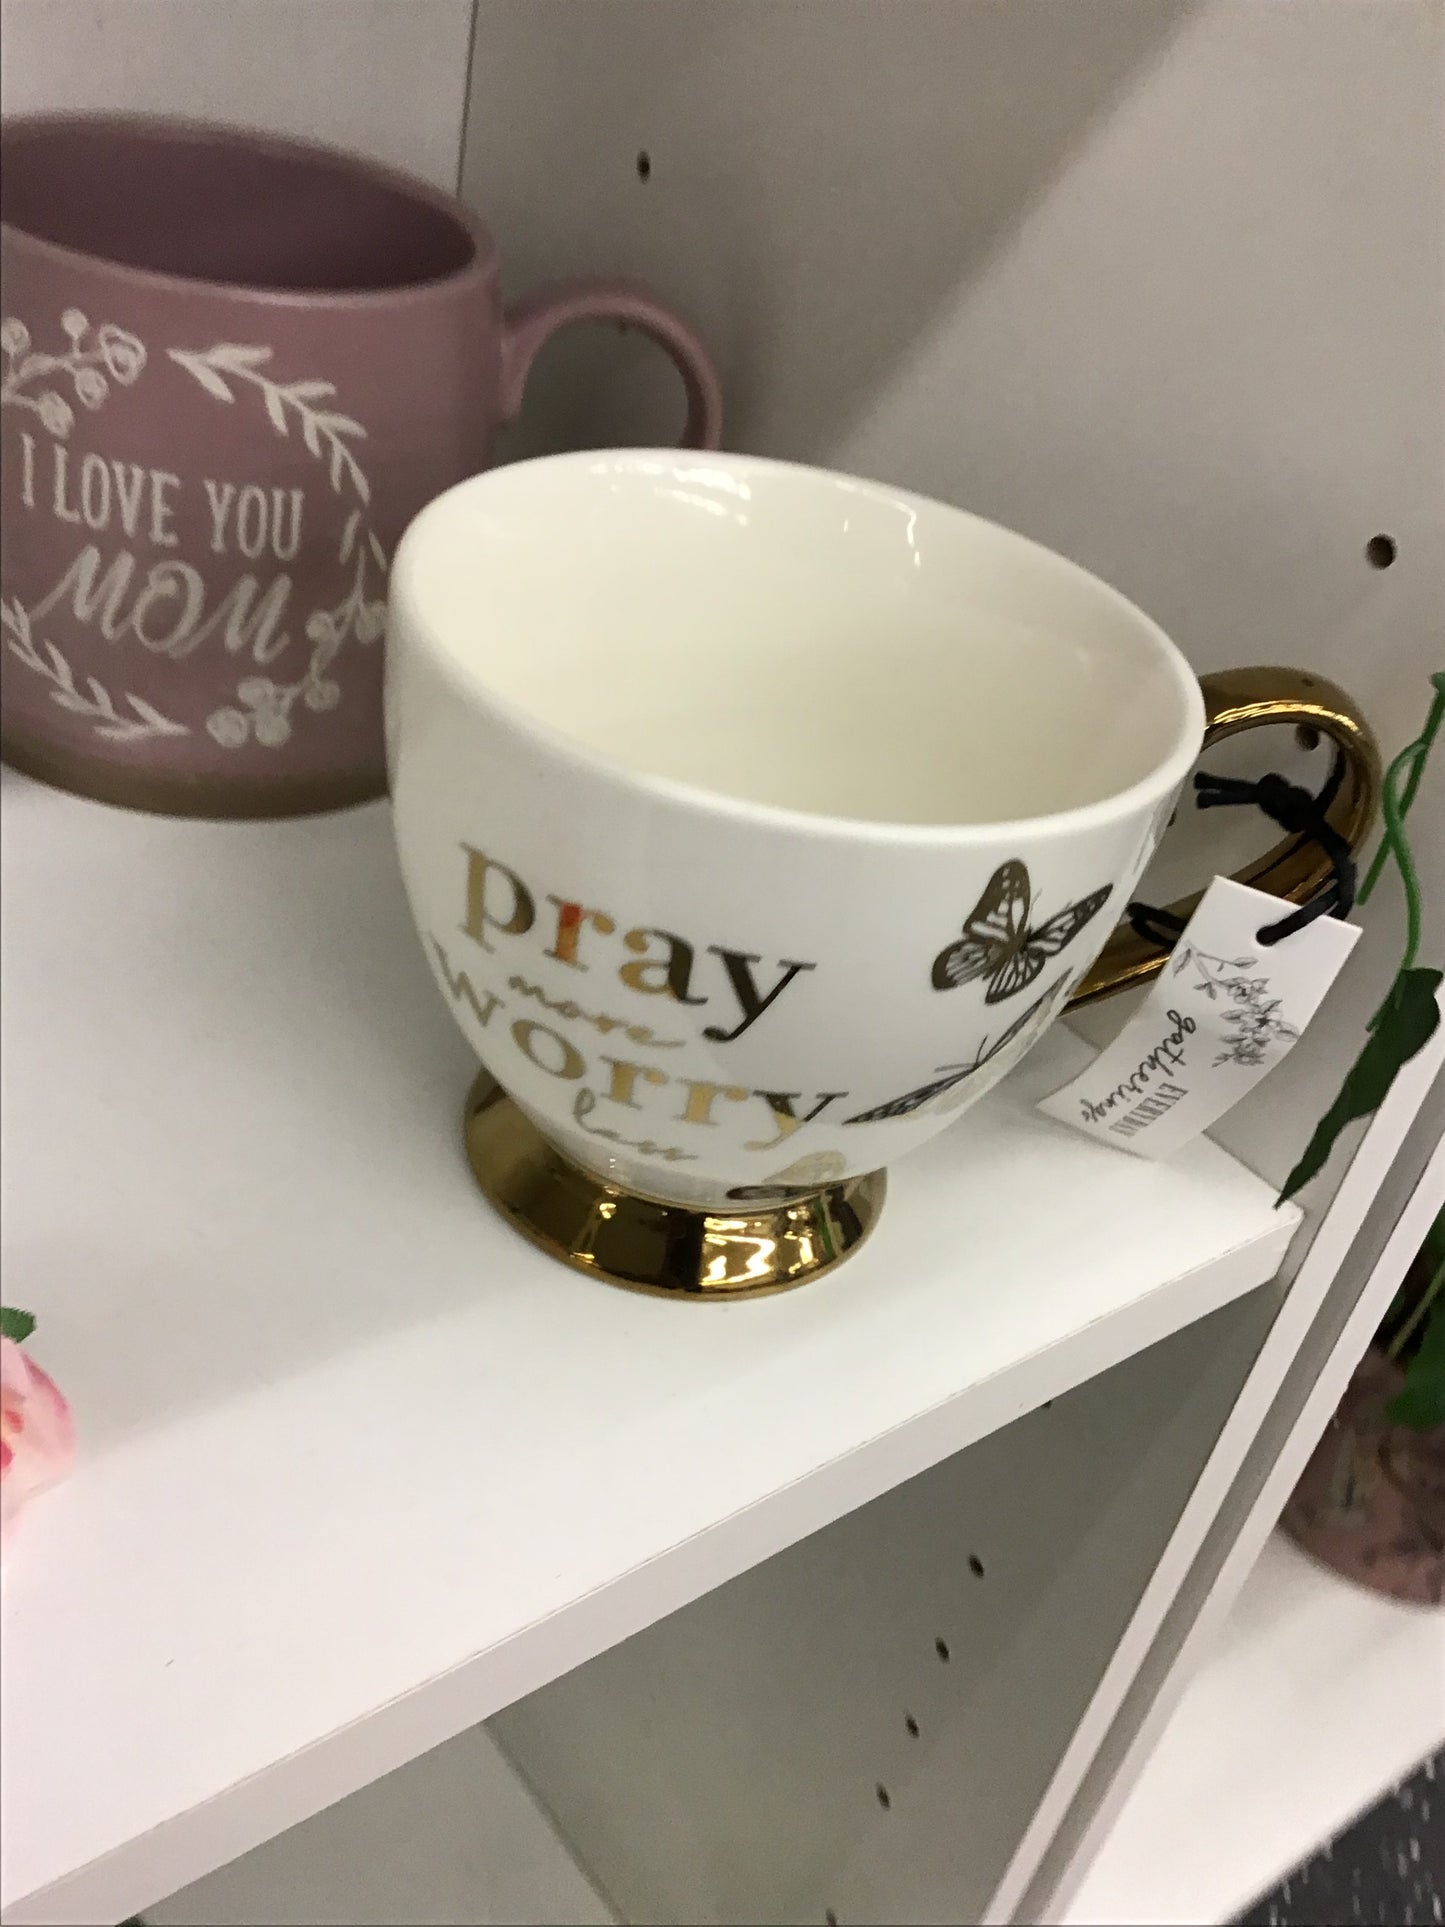 Pray more worry less mug